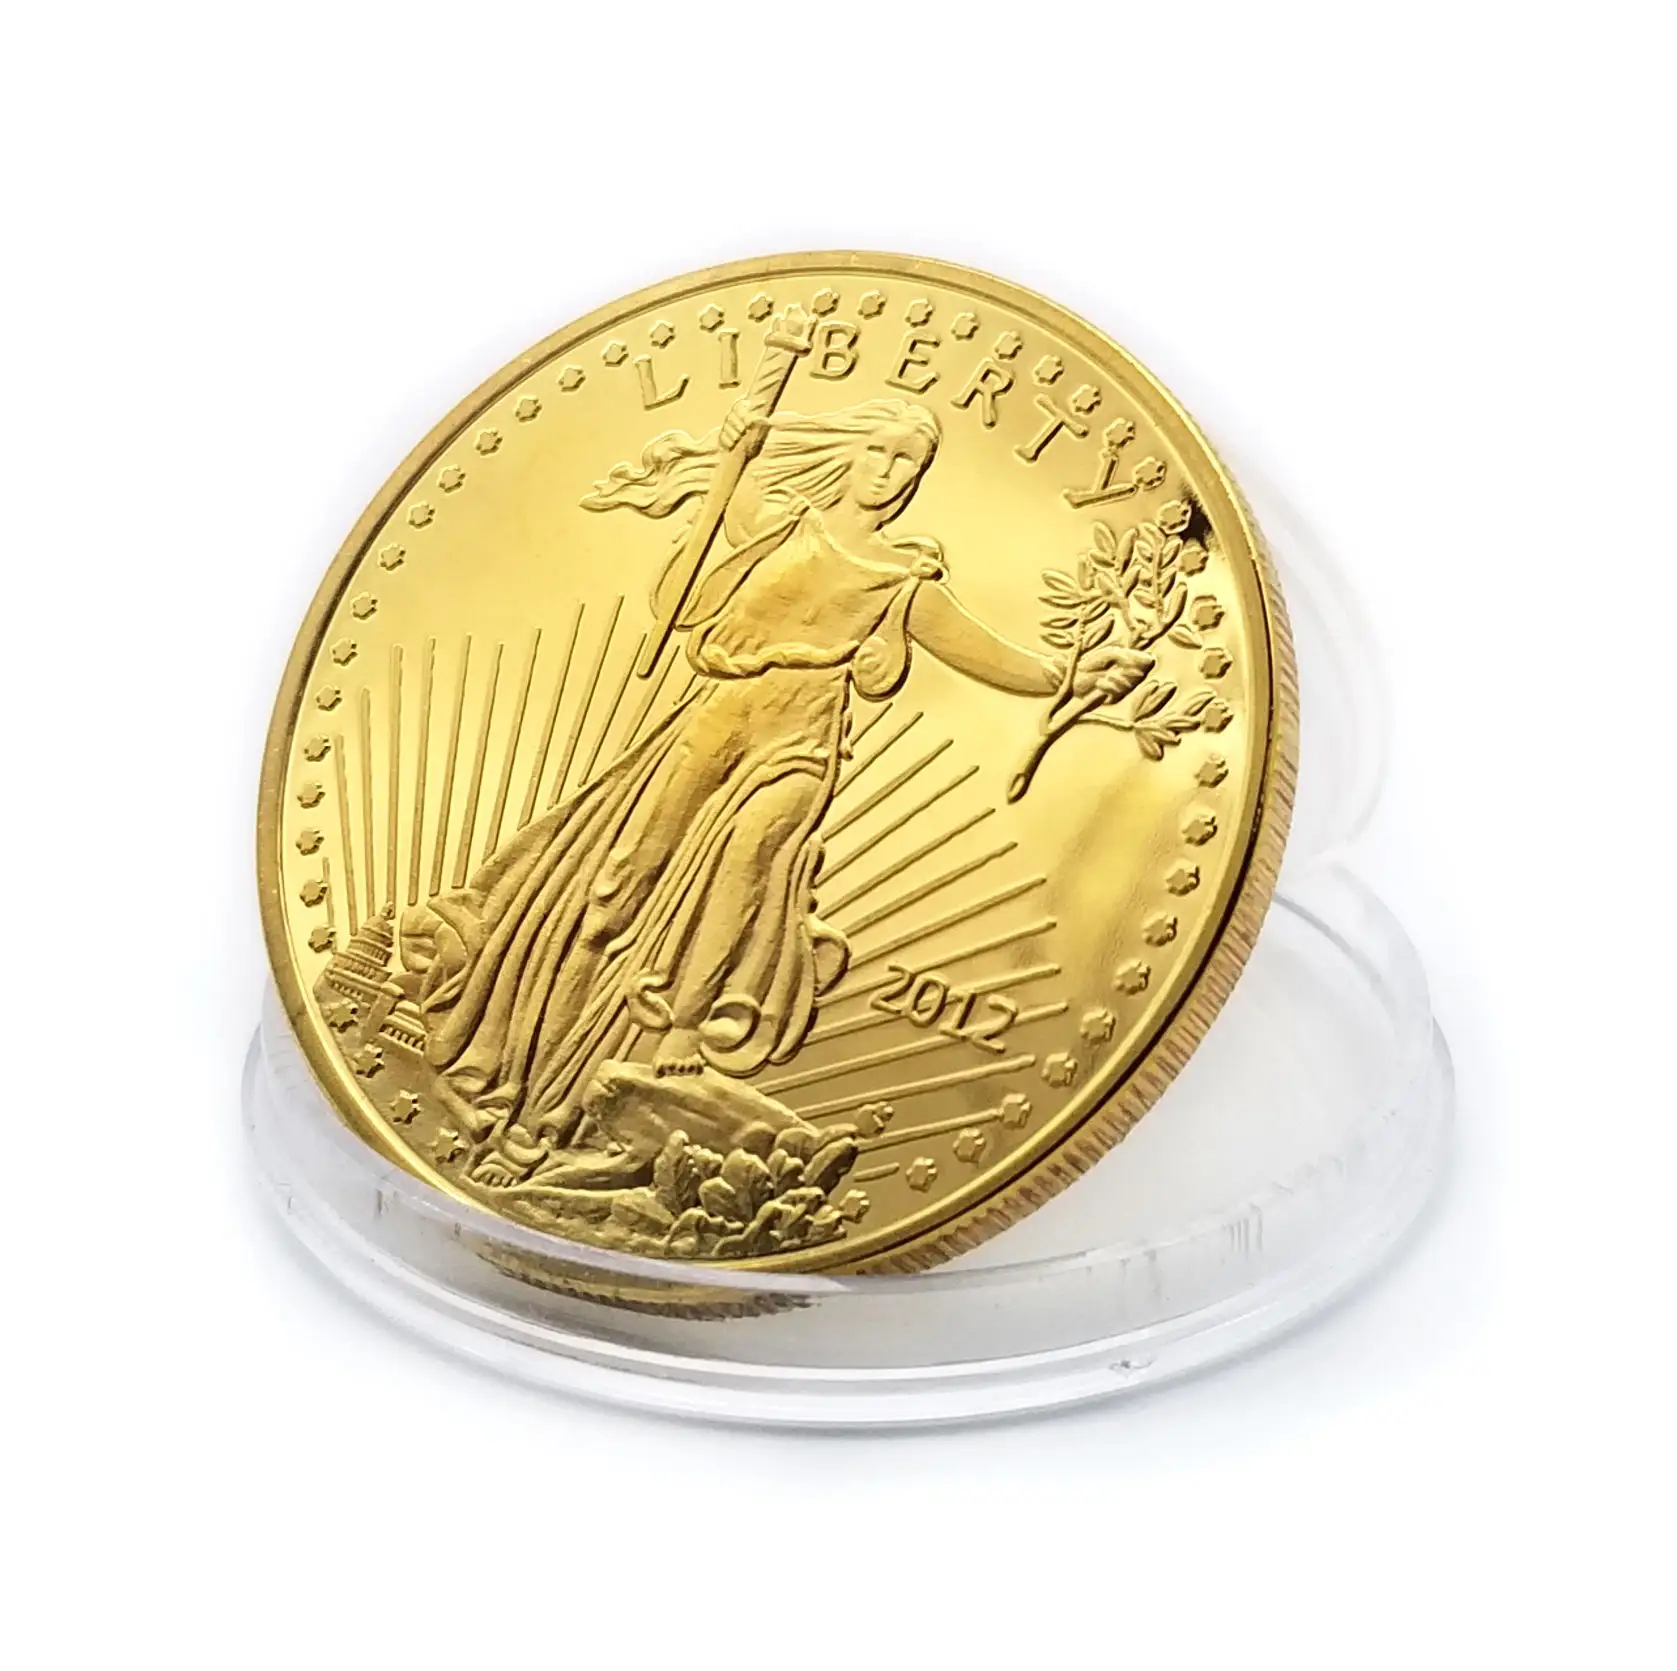 OEM çeyrek kartal 1 oz altın hatıra çoğaltma sikke amerikan tungsten altın gümüş çift kartal abd sikke